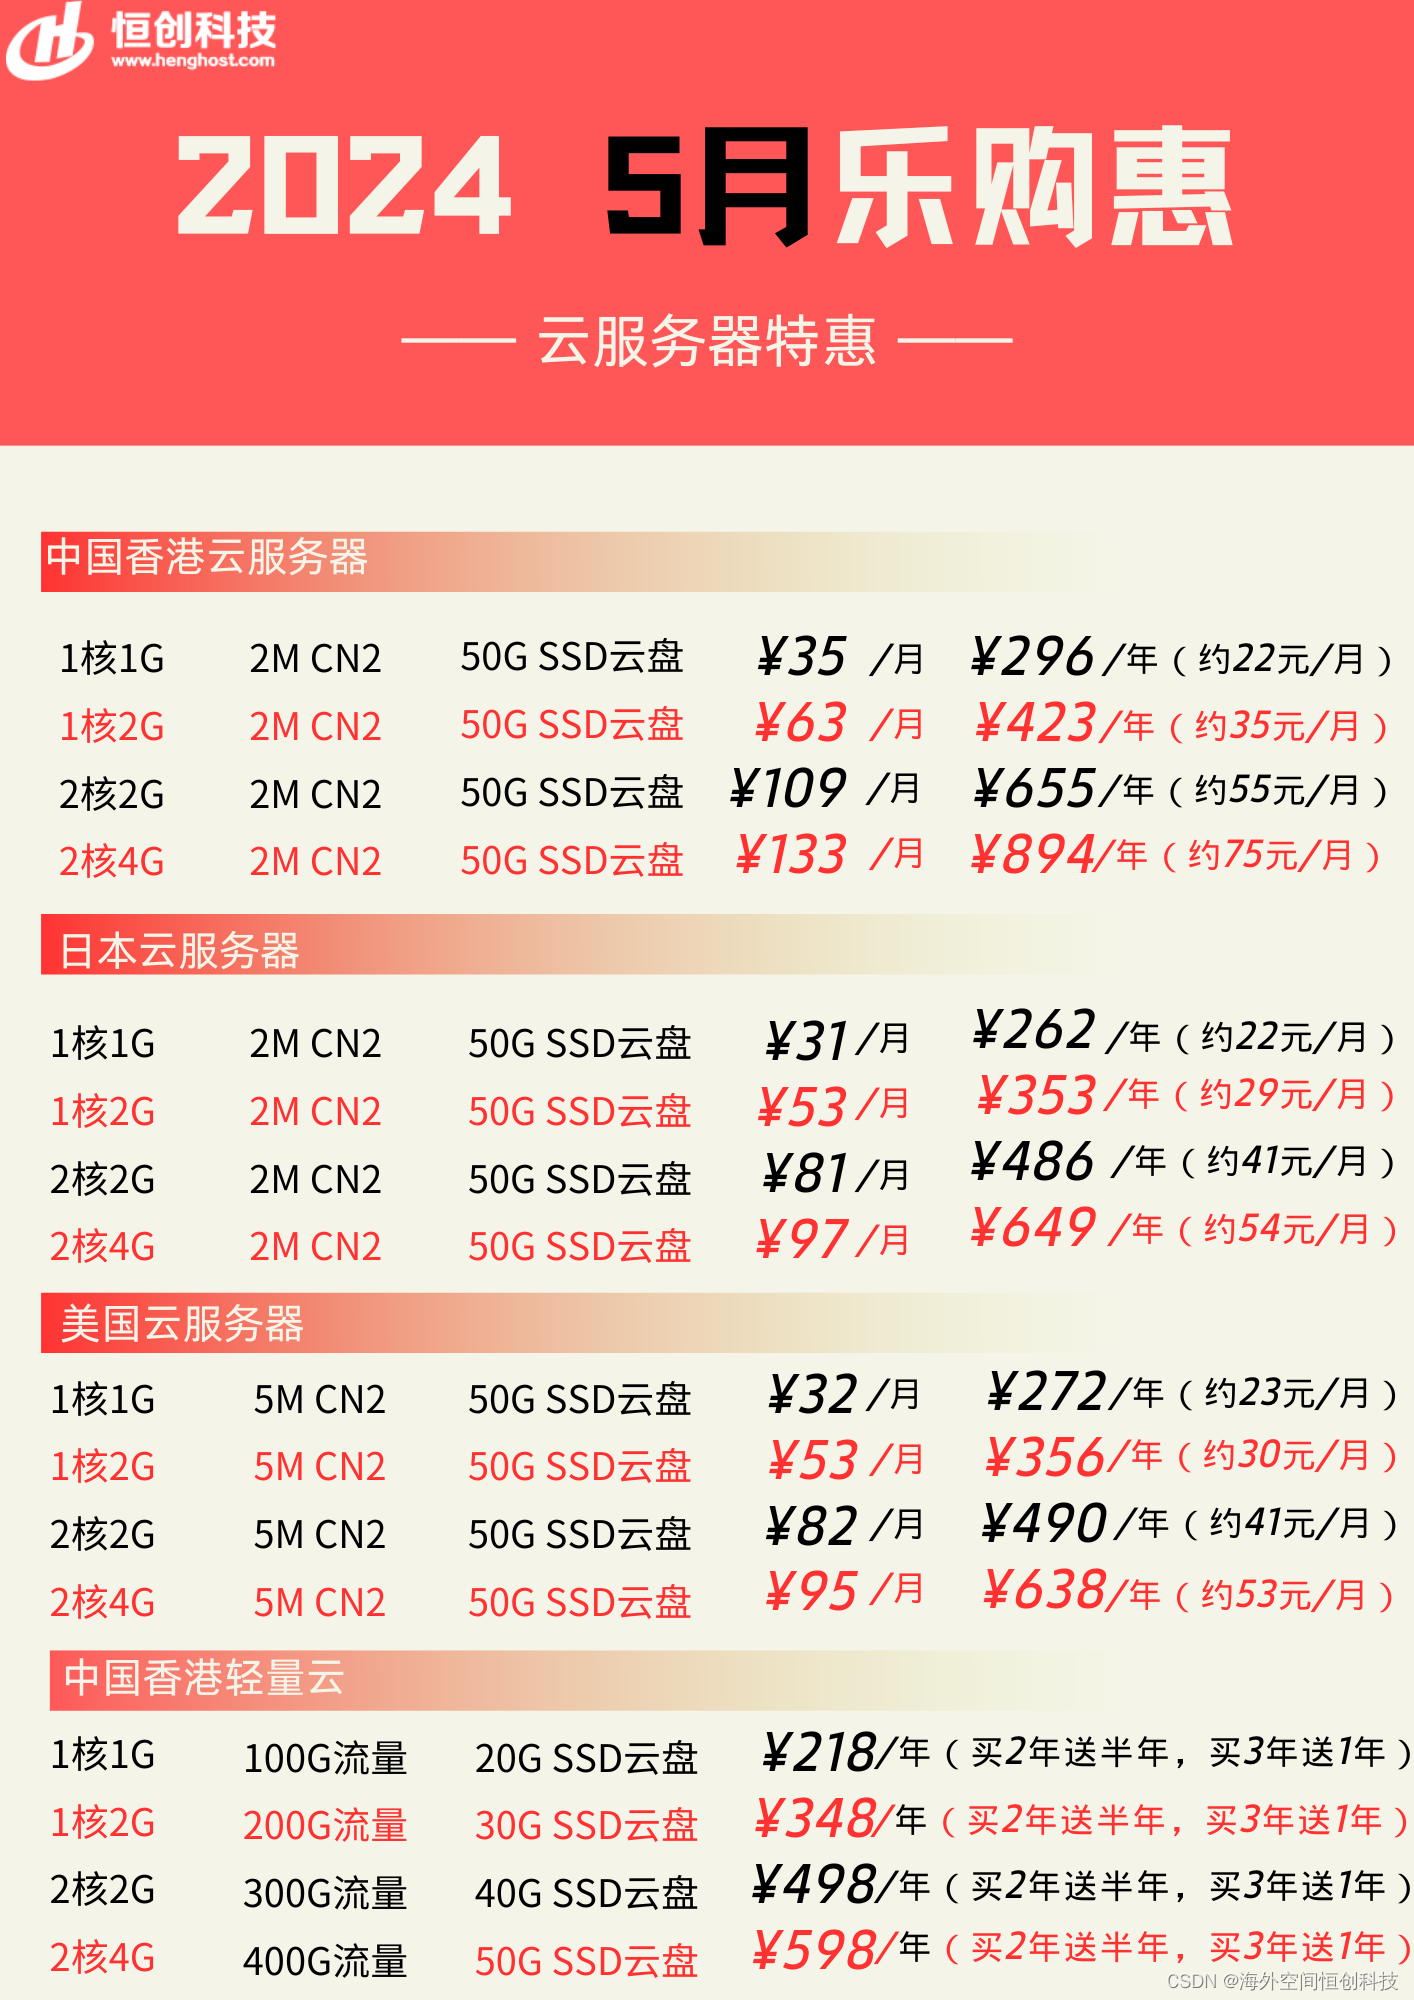 恒创科技「5月活动」中国香港/美国服务器配置及价格汇总